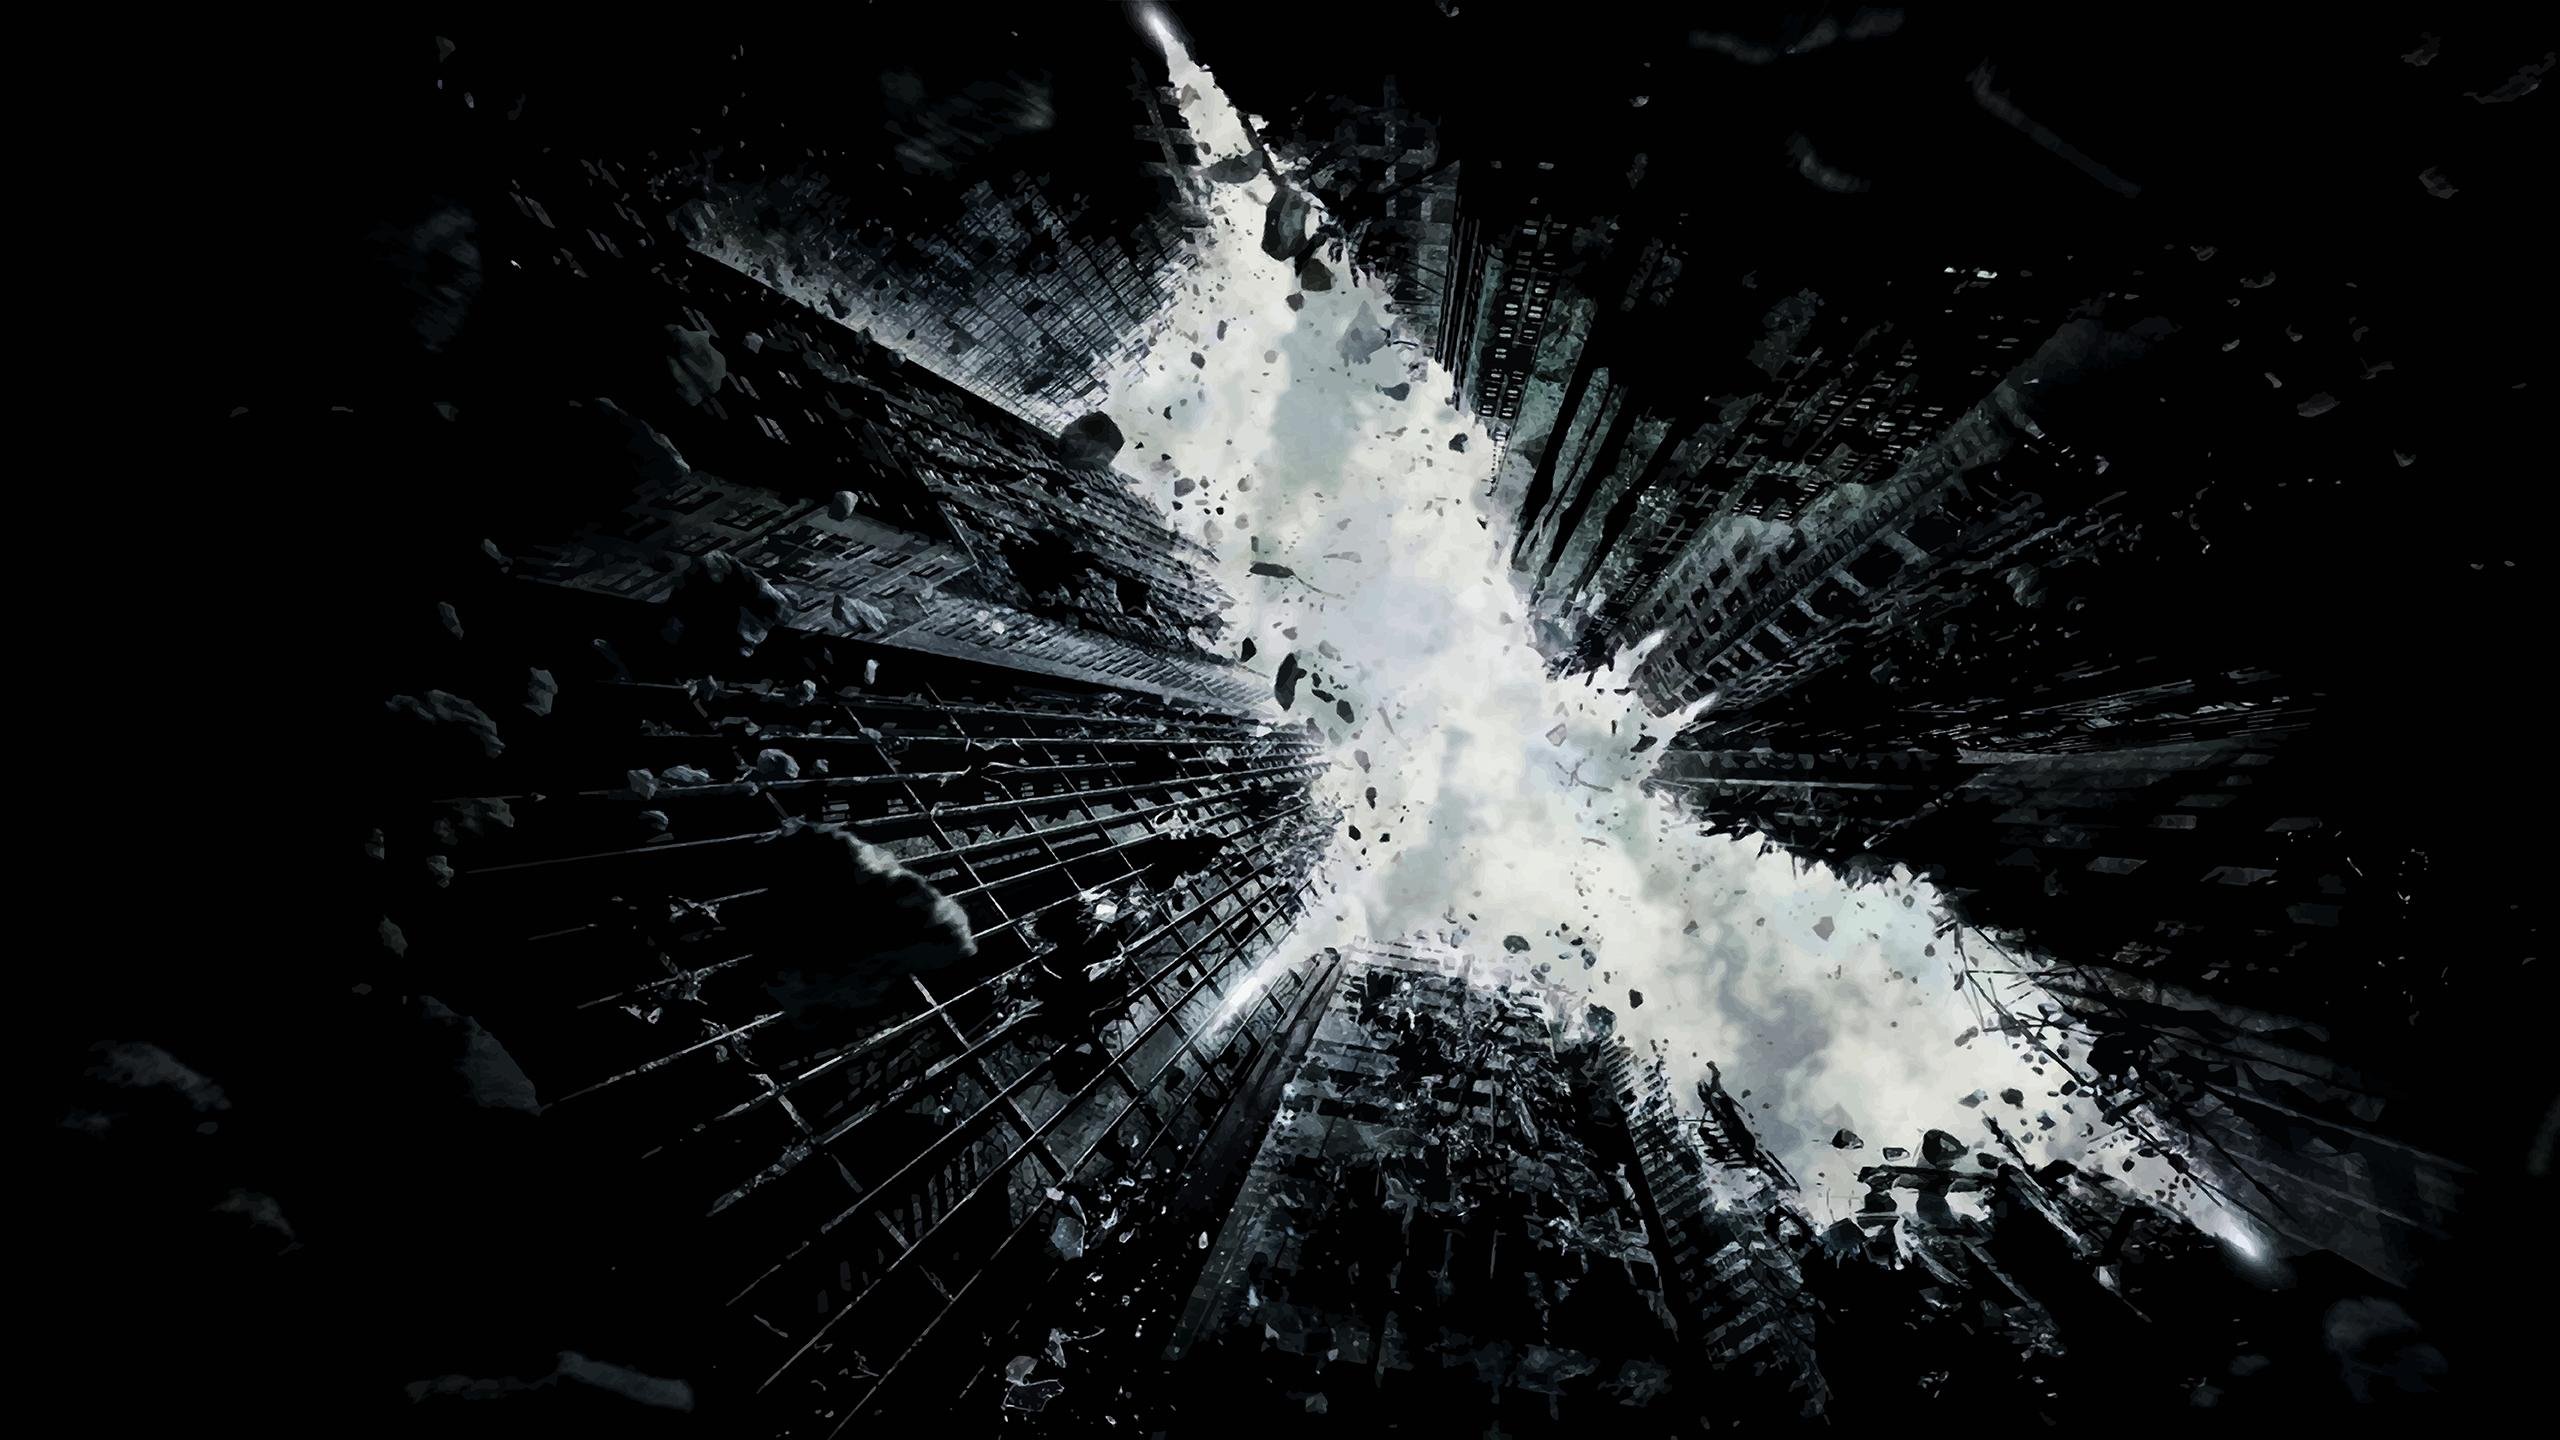 Batman Wallpaper - Dark Knight Rises Teaser Poster , HD Wallpaper & Backgrounds